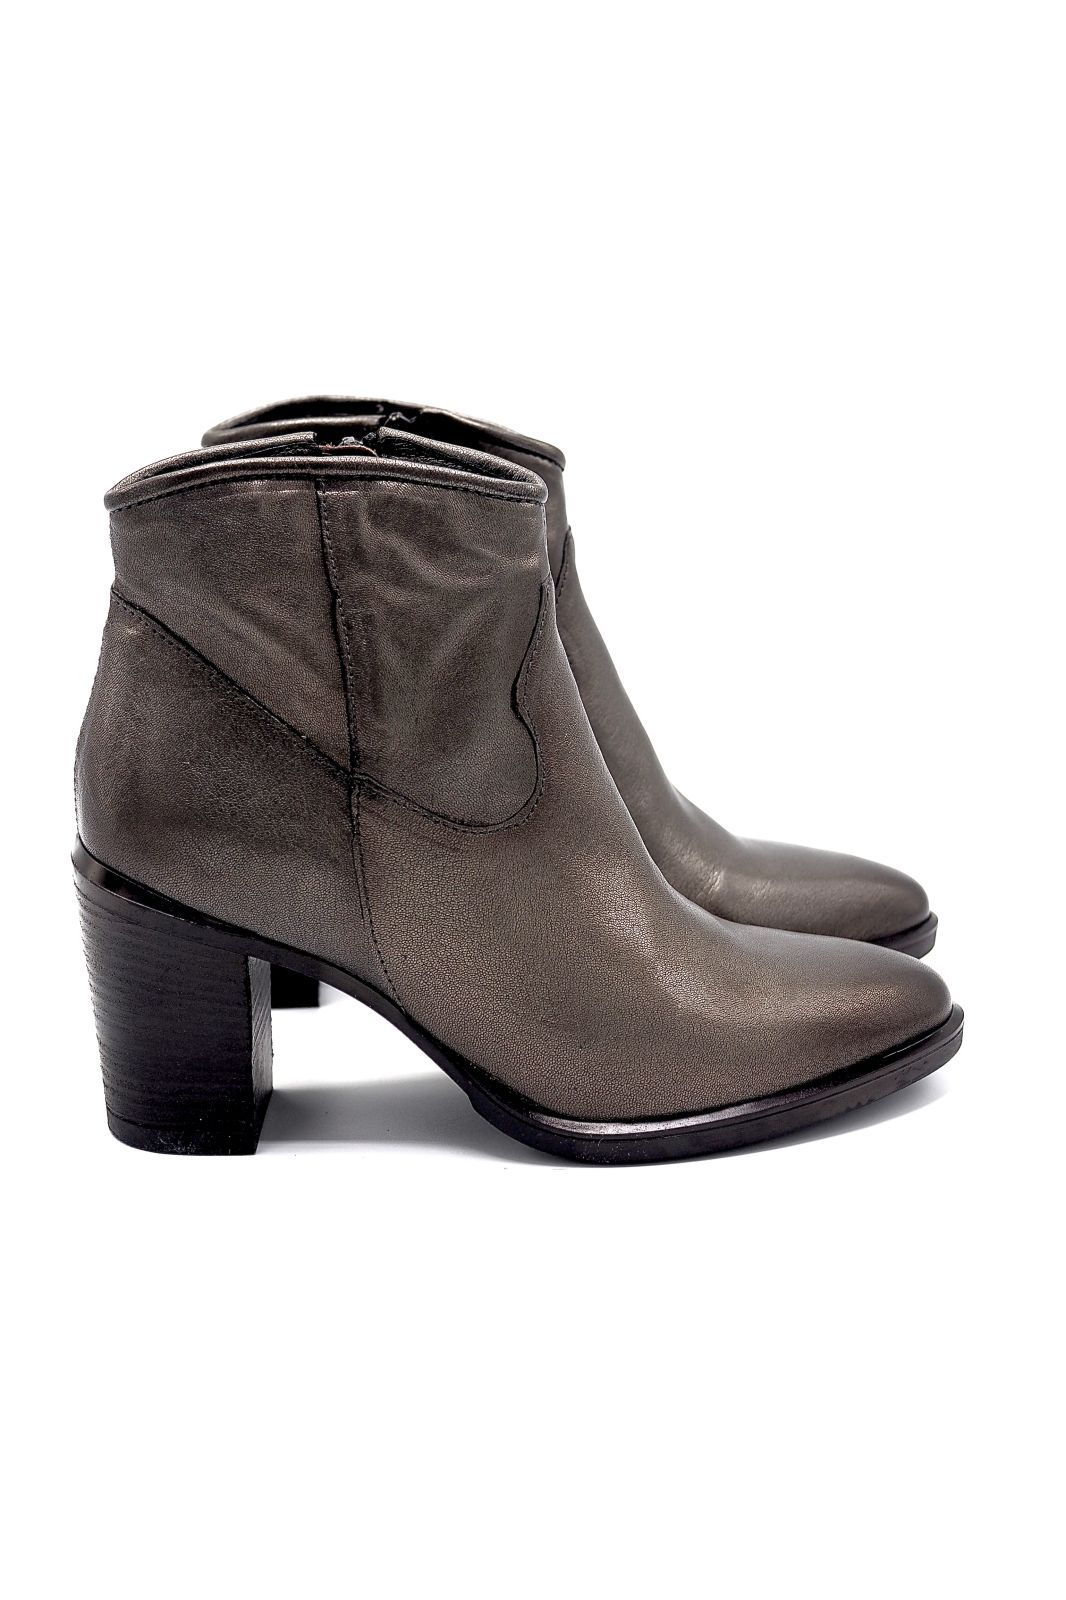 Mjus boots Bronze femmes (MJUS-Santiag T6 large bronze - 210242 Santiag métalisé bronze) - Marine | Much more than shoes